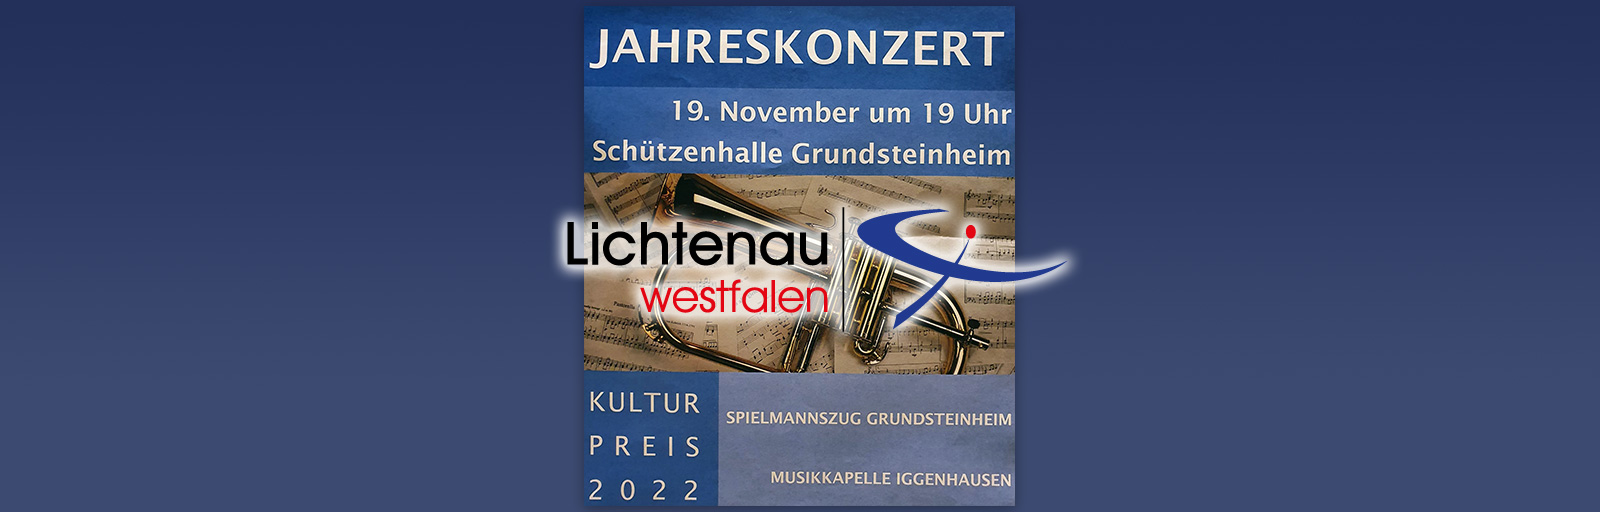 Einladung zum Jahreskonzert in Grundsteinheim am Samstag